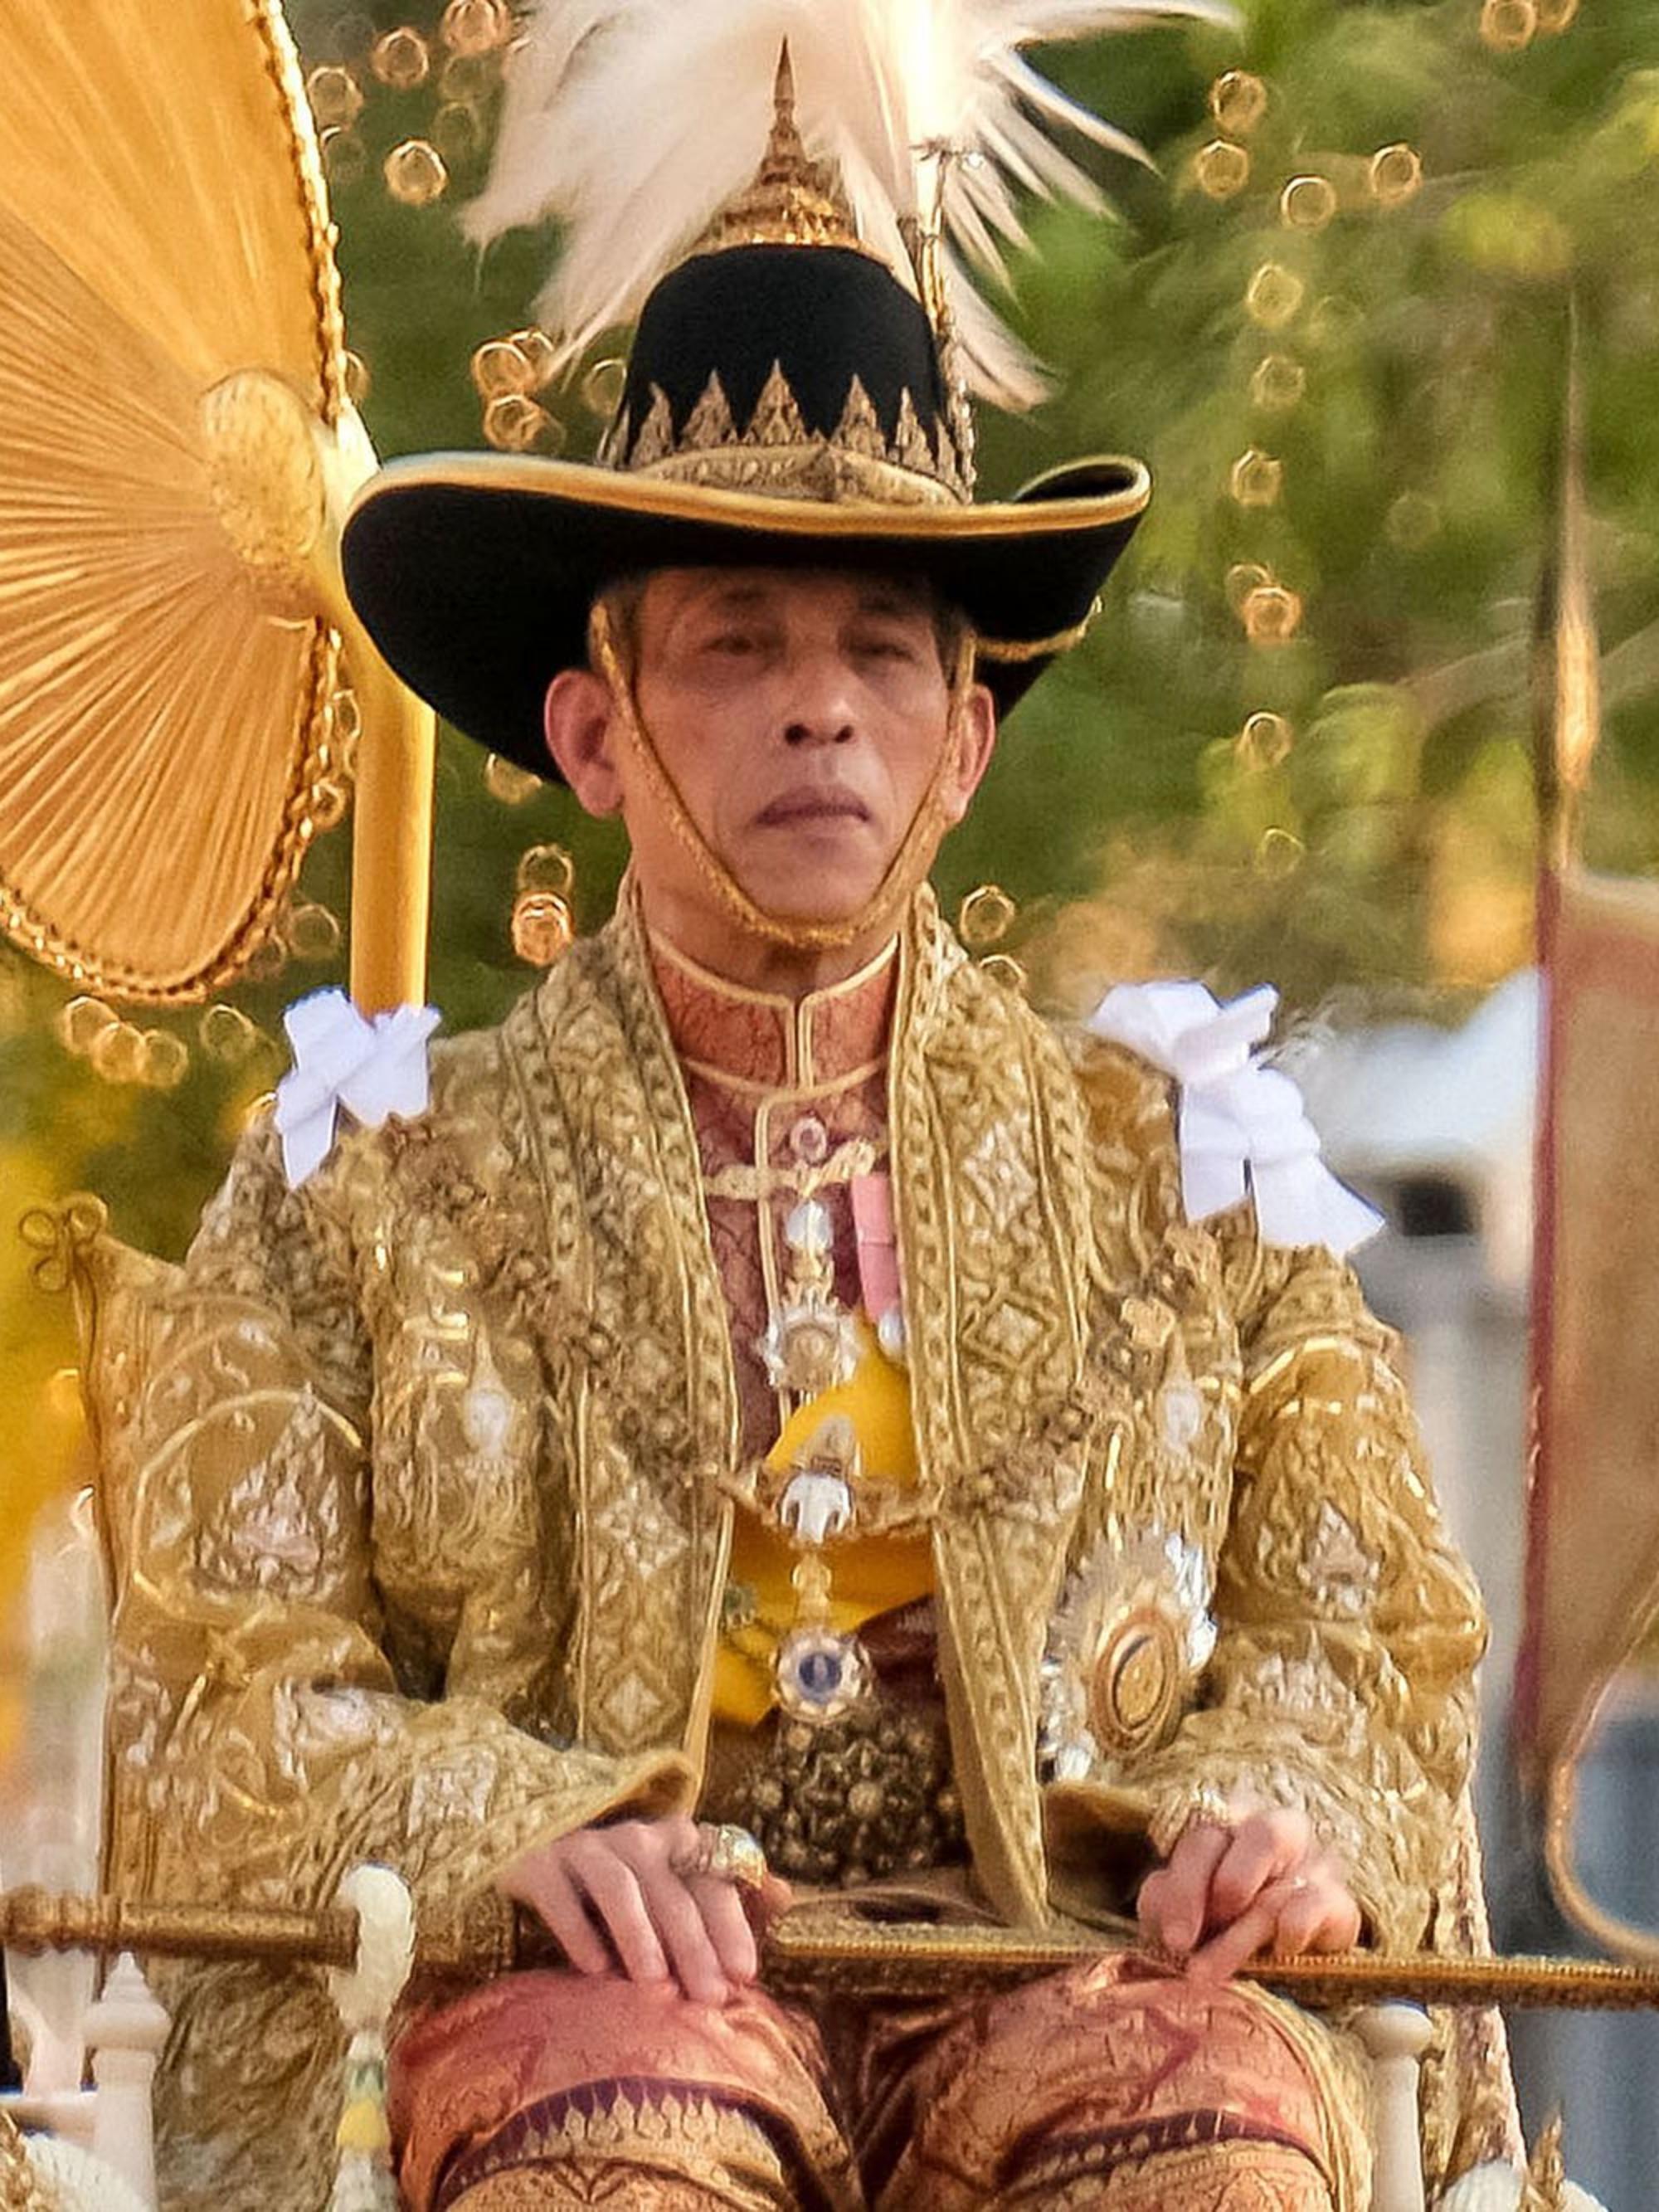 Grande parade et canicule pour le couronnement du roi de Thaïlande (en images)